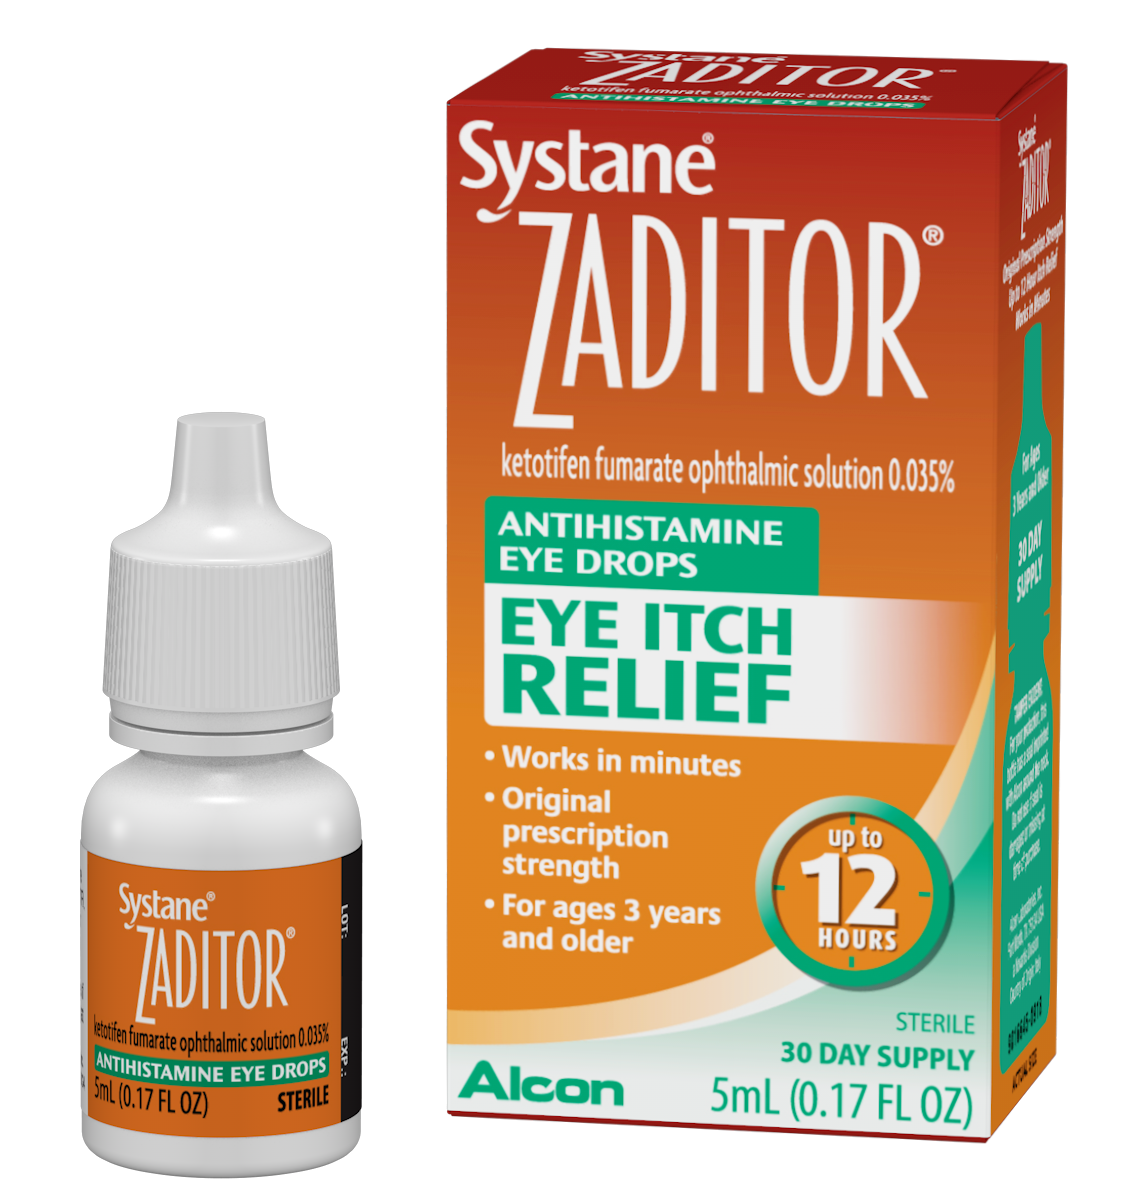 SYSTANE® ZADITOR® Antihistamine Eye Drops